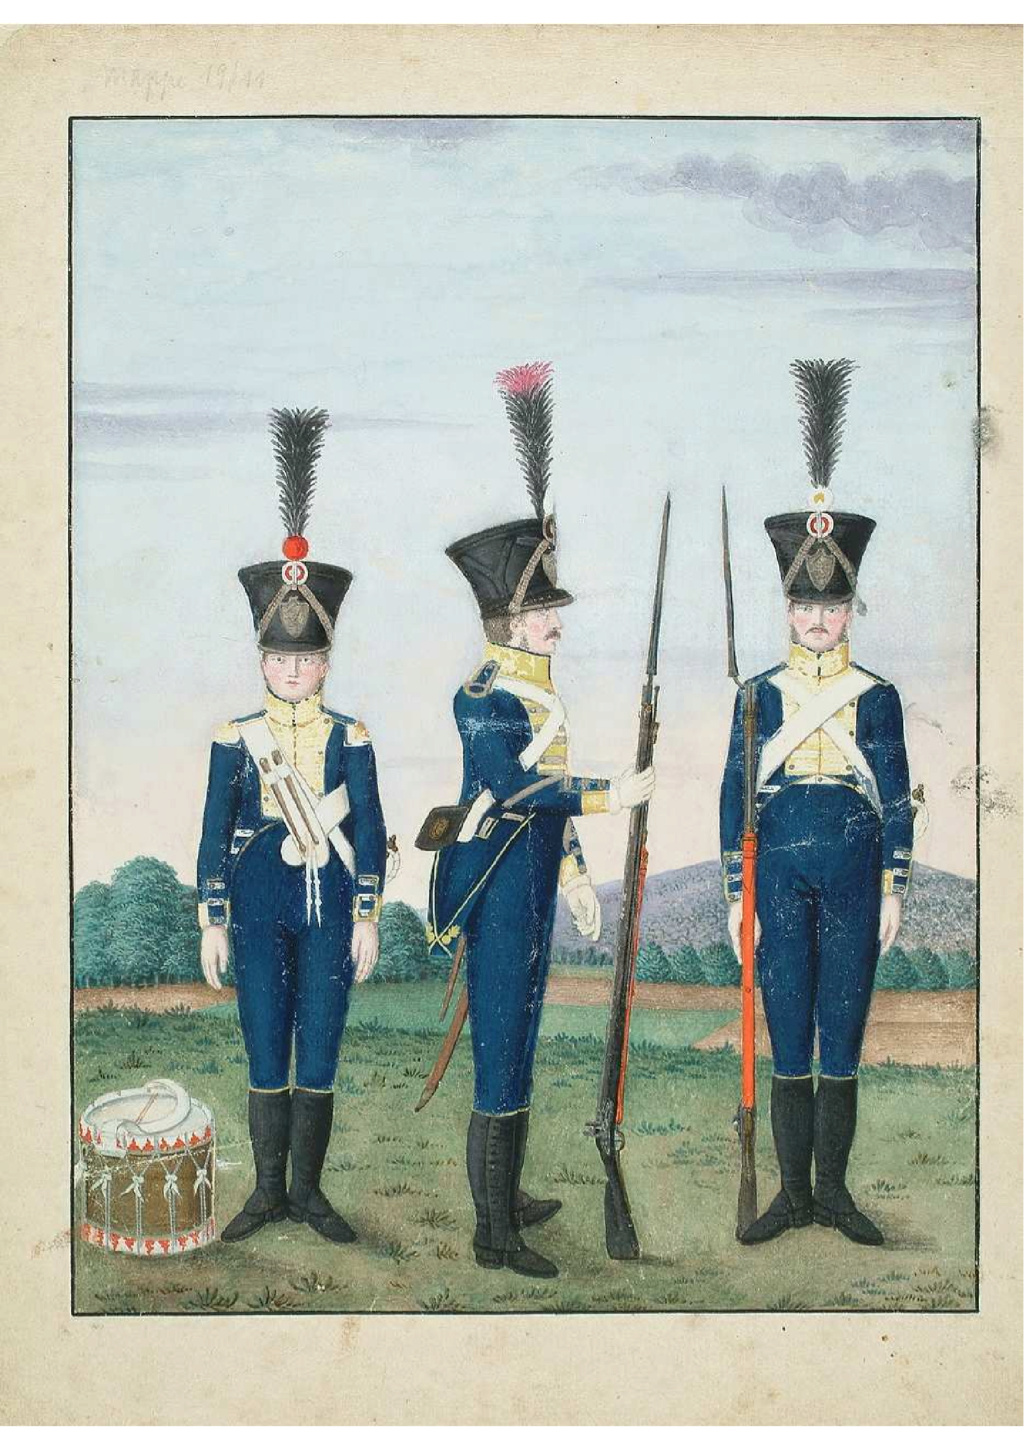 recherche informations sur infanterie HESSE DARMSTADT 1815 - Page 3 Rzogim28